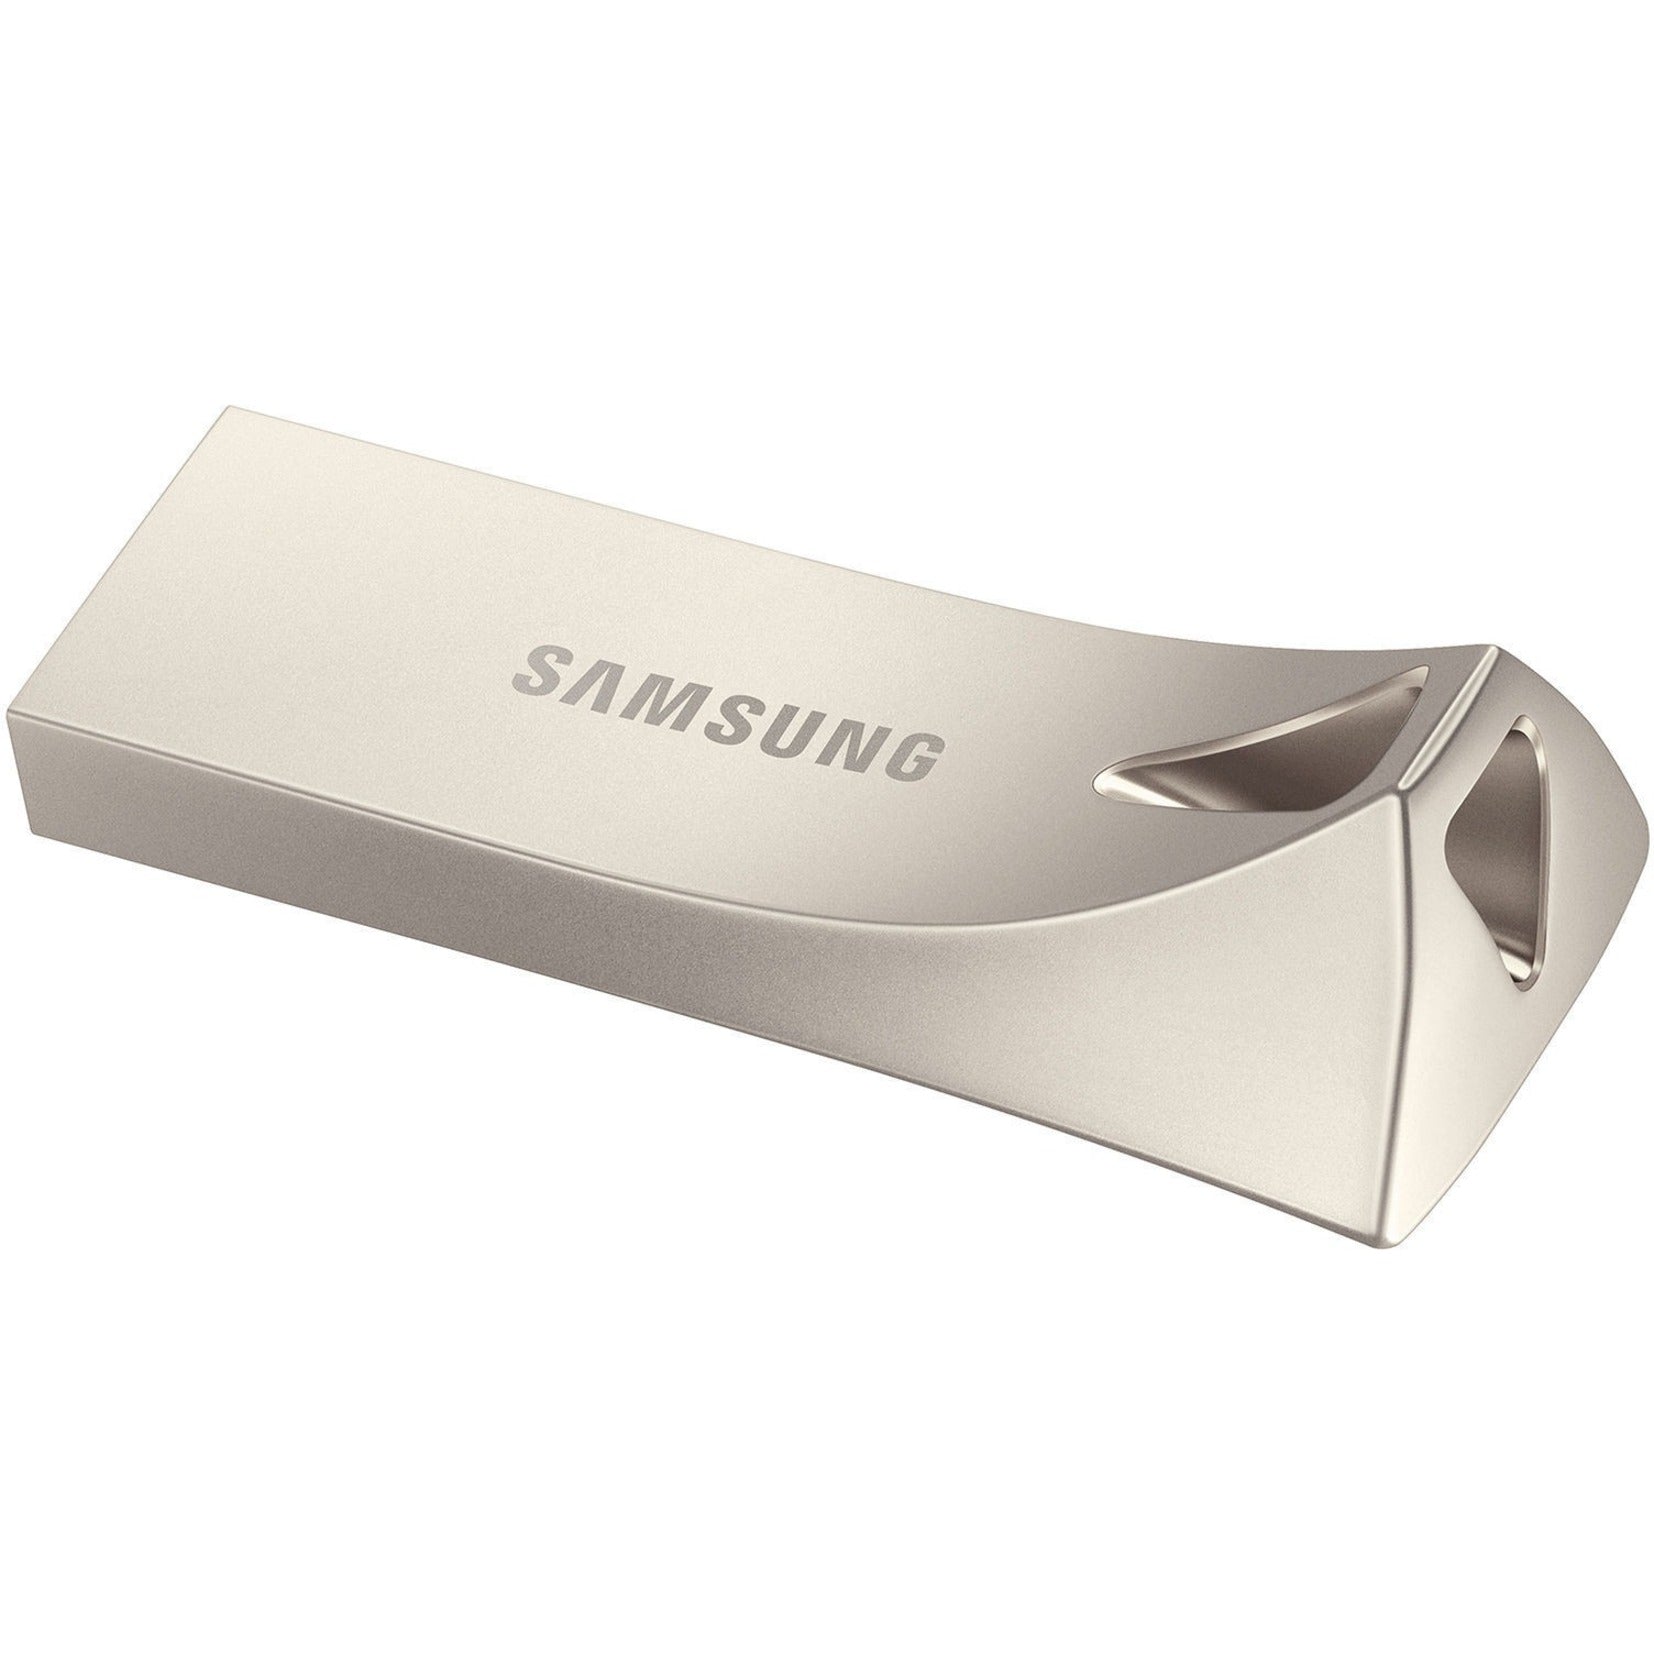 Samsung MUF-128BE3/AM USB 3.1 Flash Drive BAR Plus 128GB Champagne Silver, 5 Year Warranty